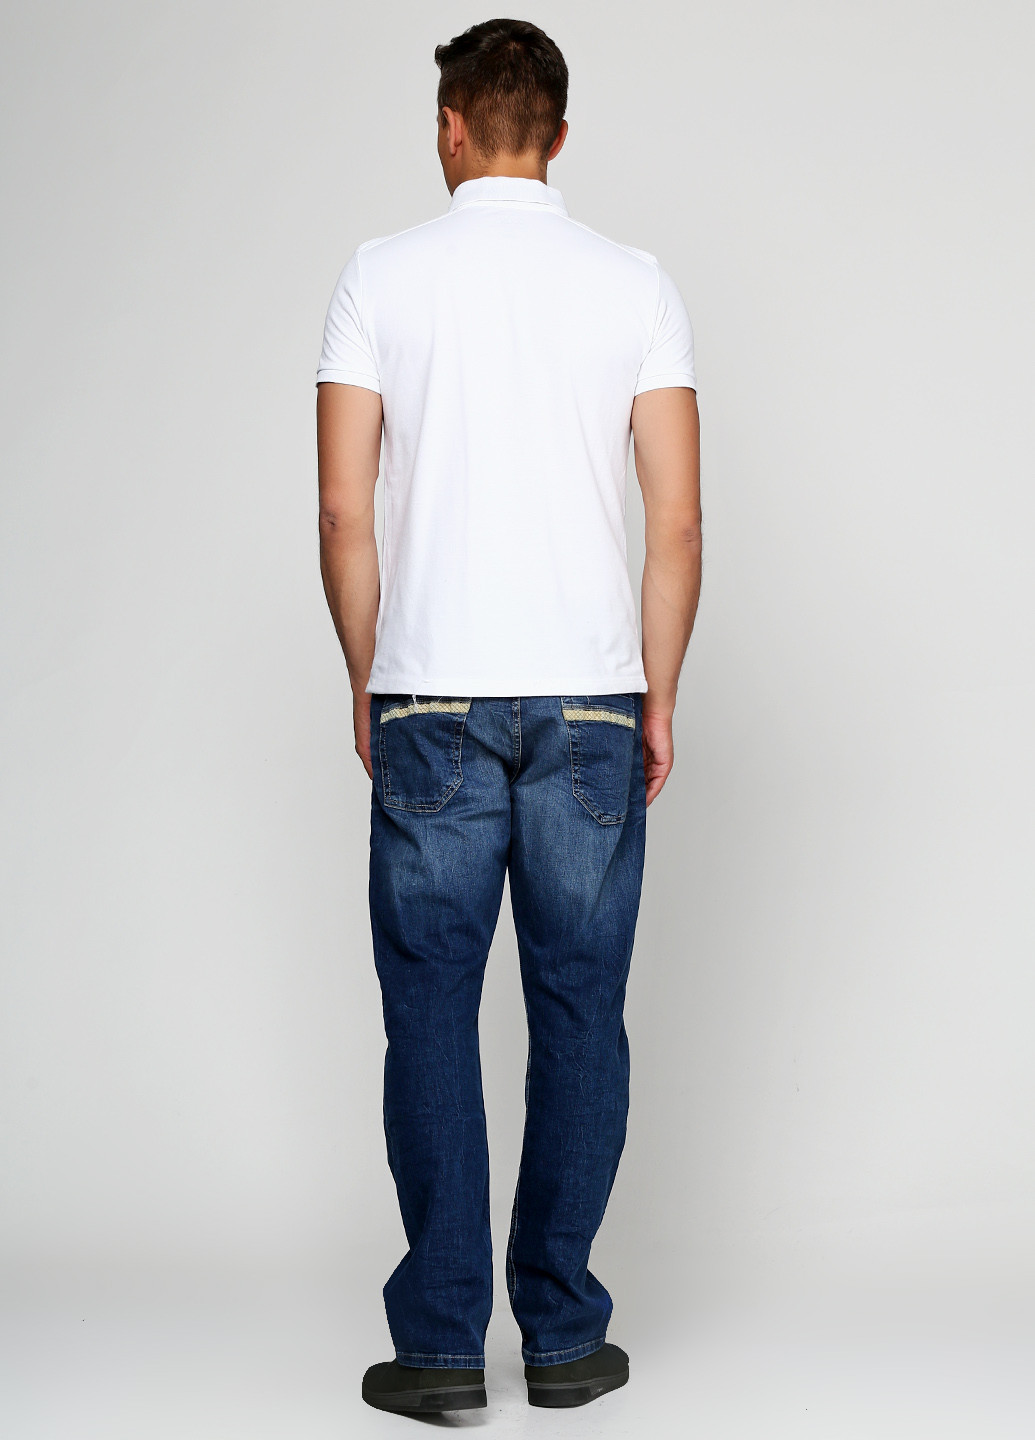 Синие демисезонные прямые джинсы Bruno Banani